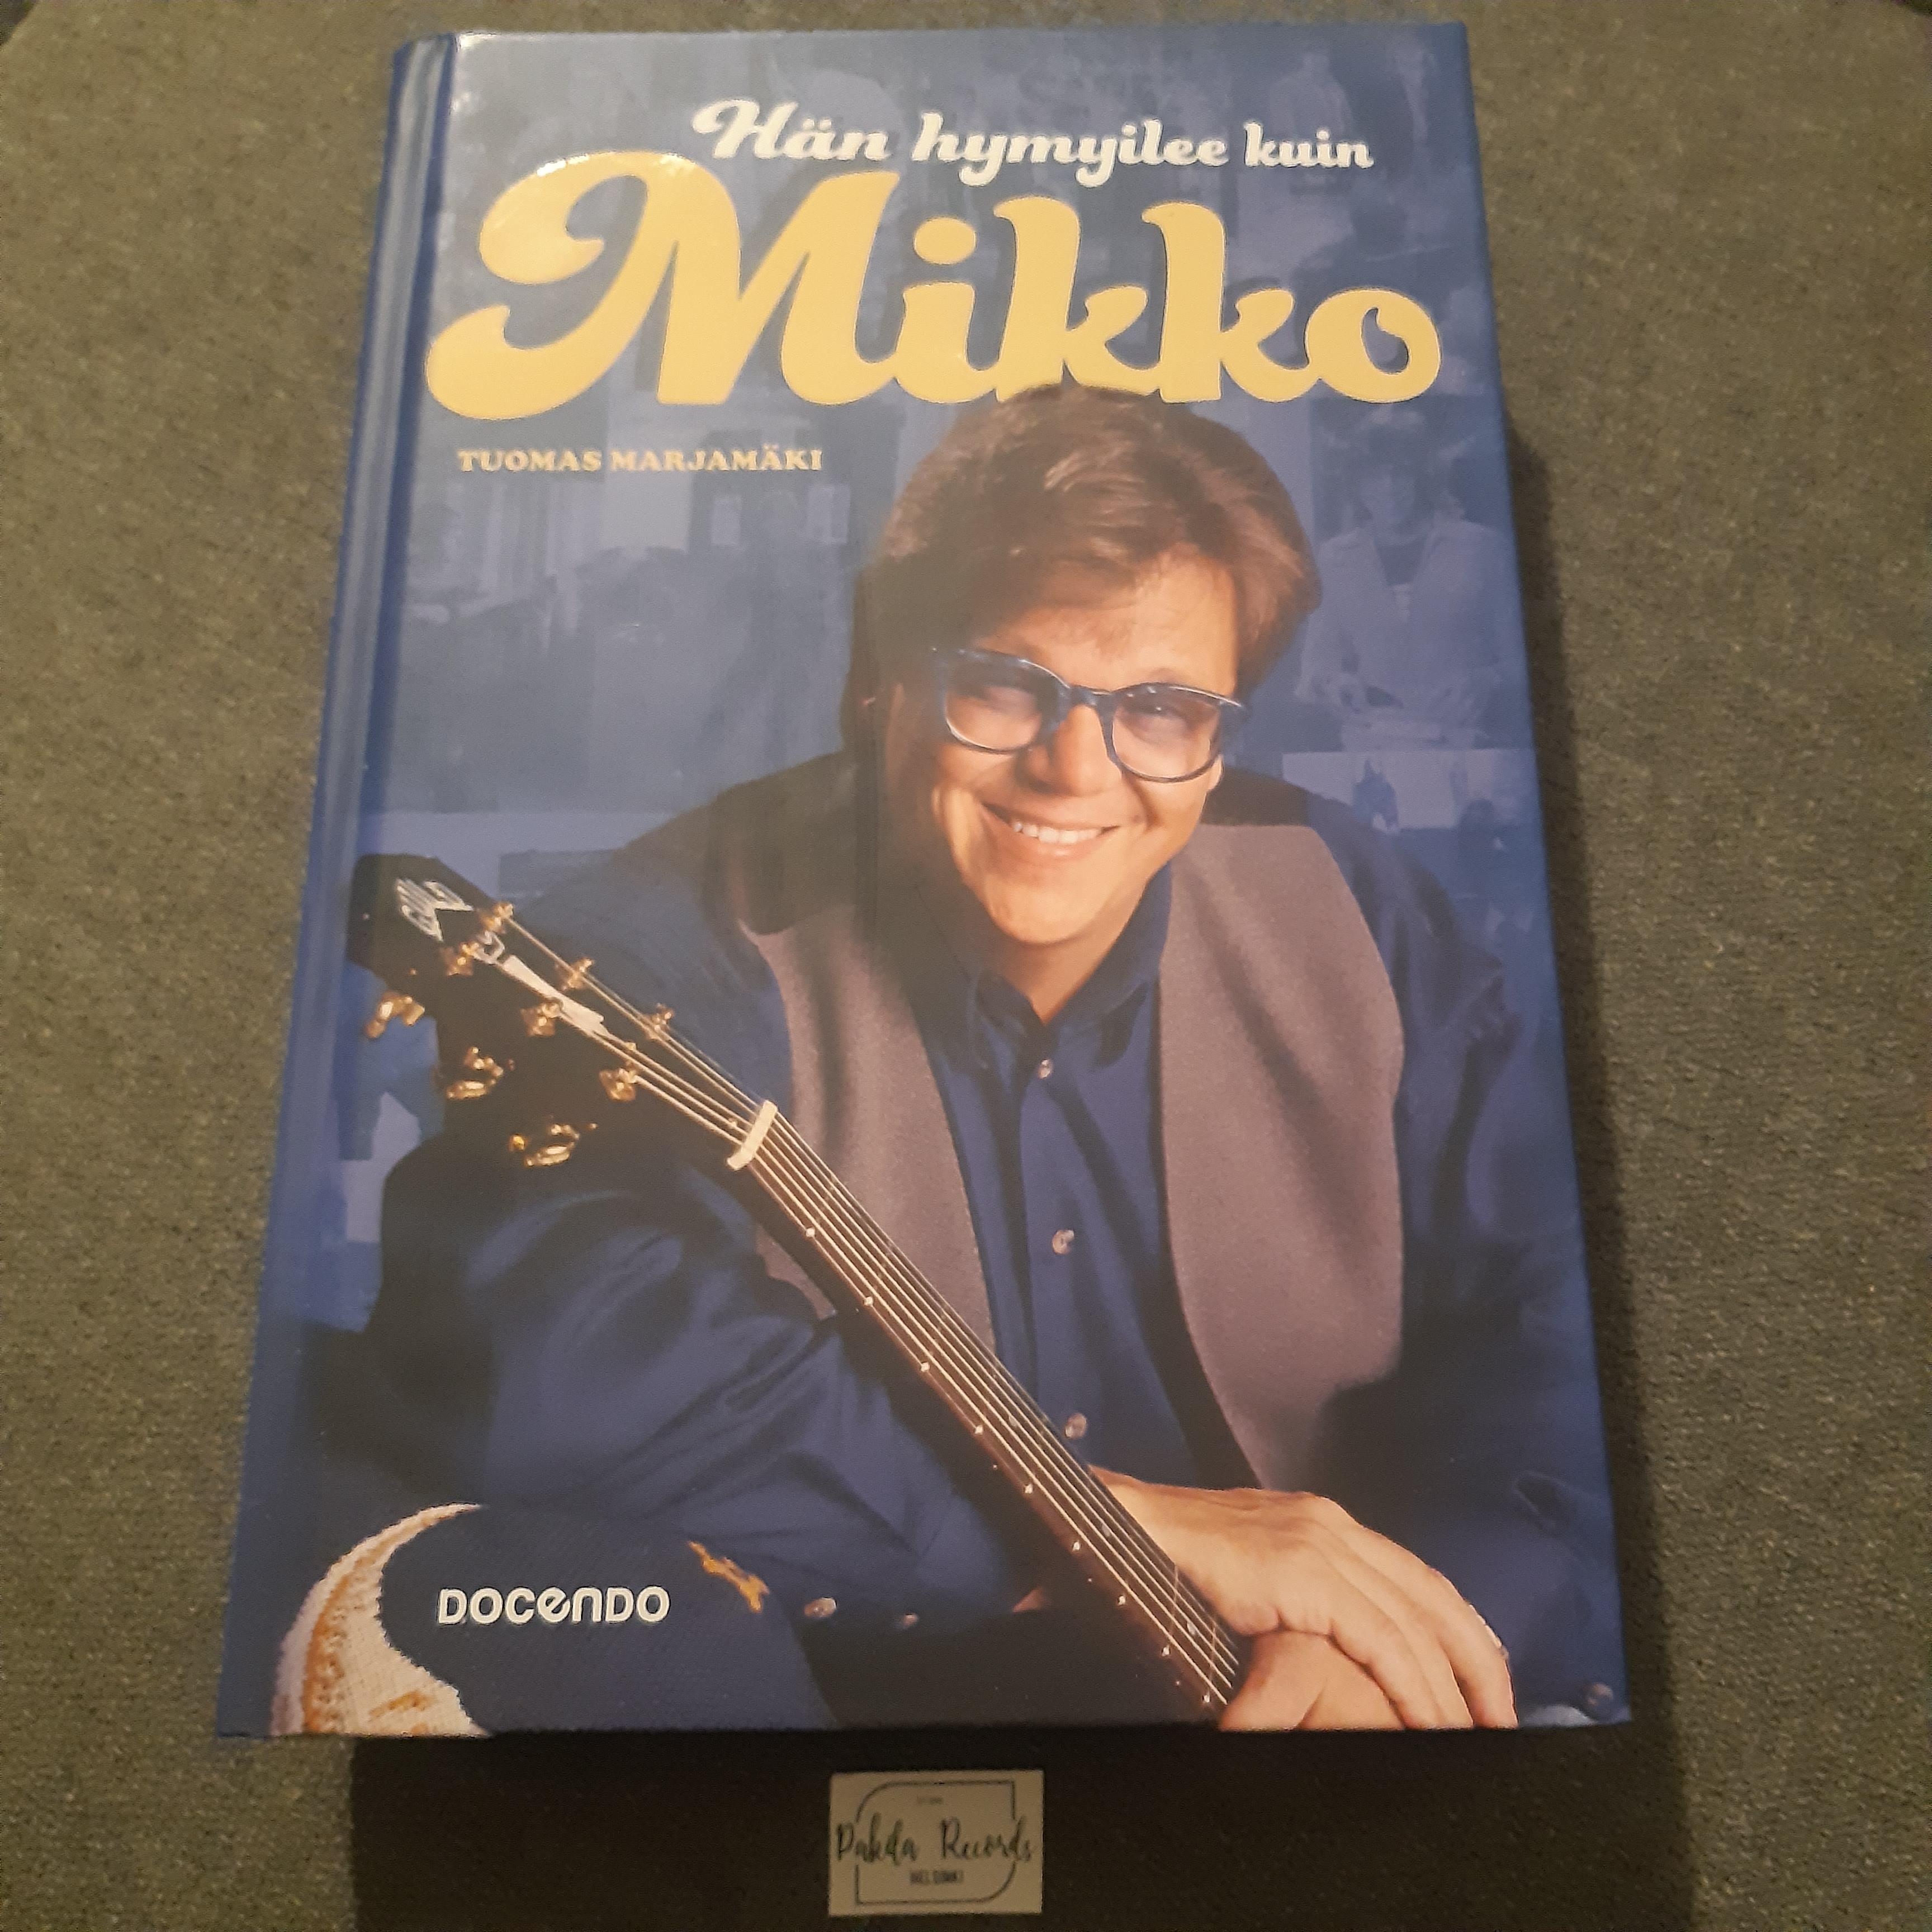 Hän hymyilee kuin Mikko - Tuomas Marjamäki - Kirja (käytetty)